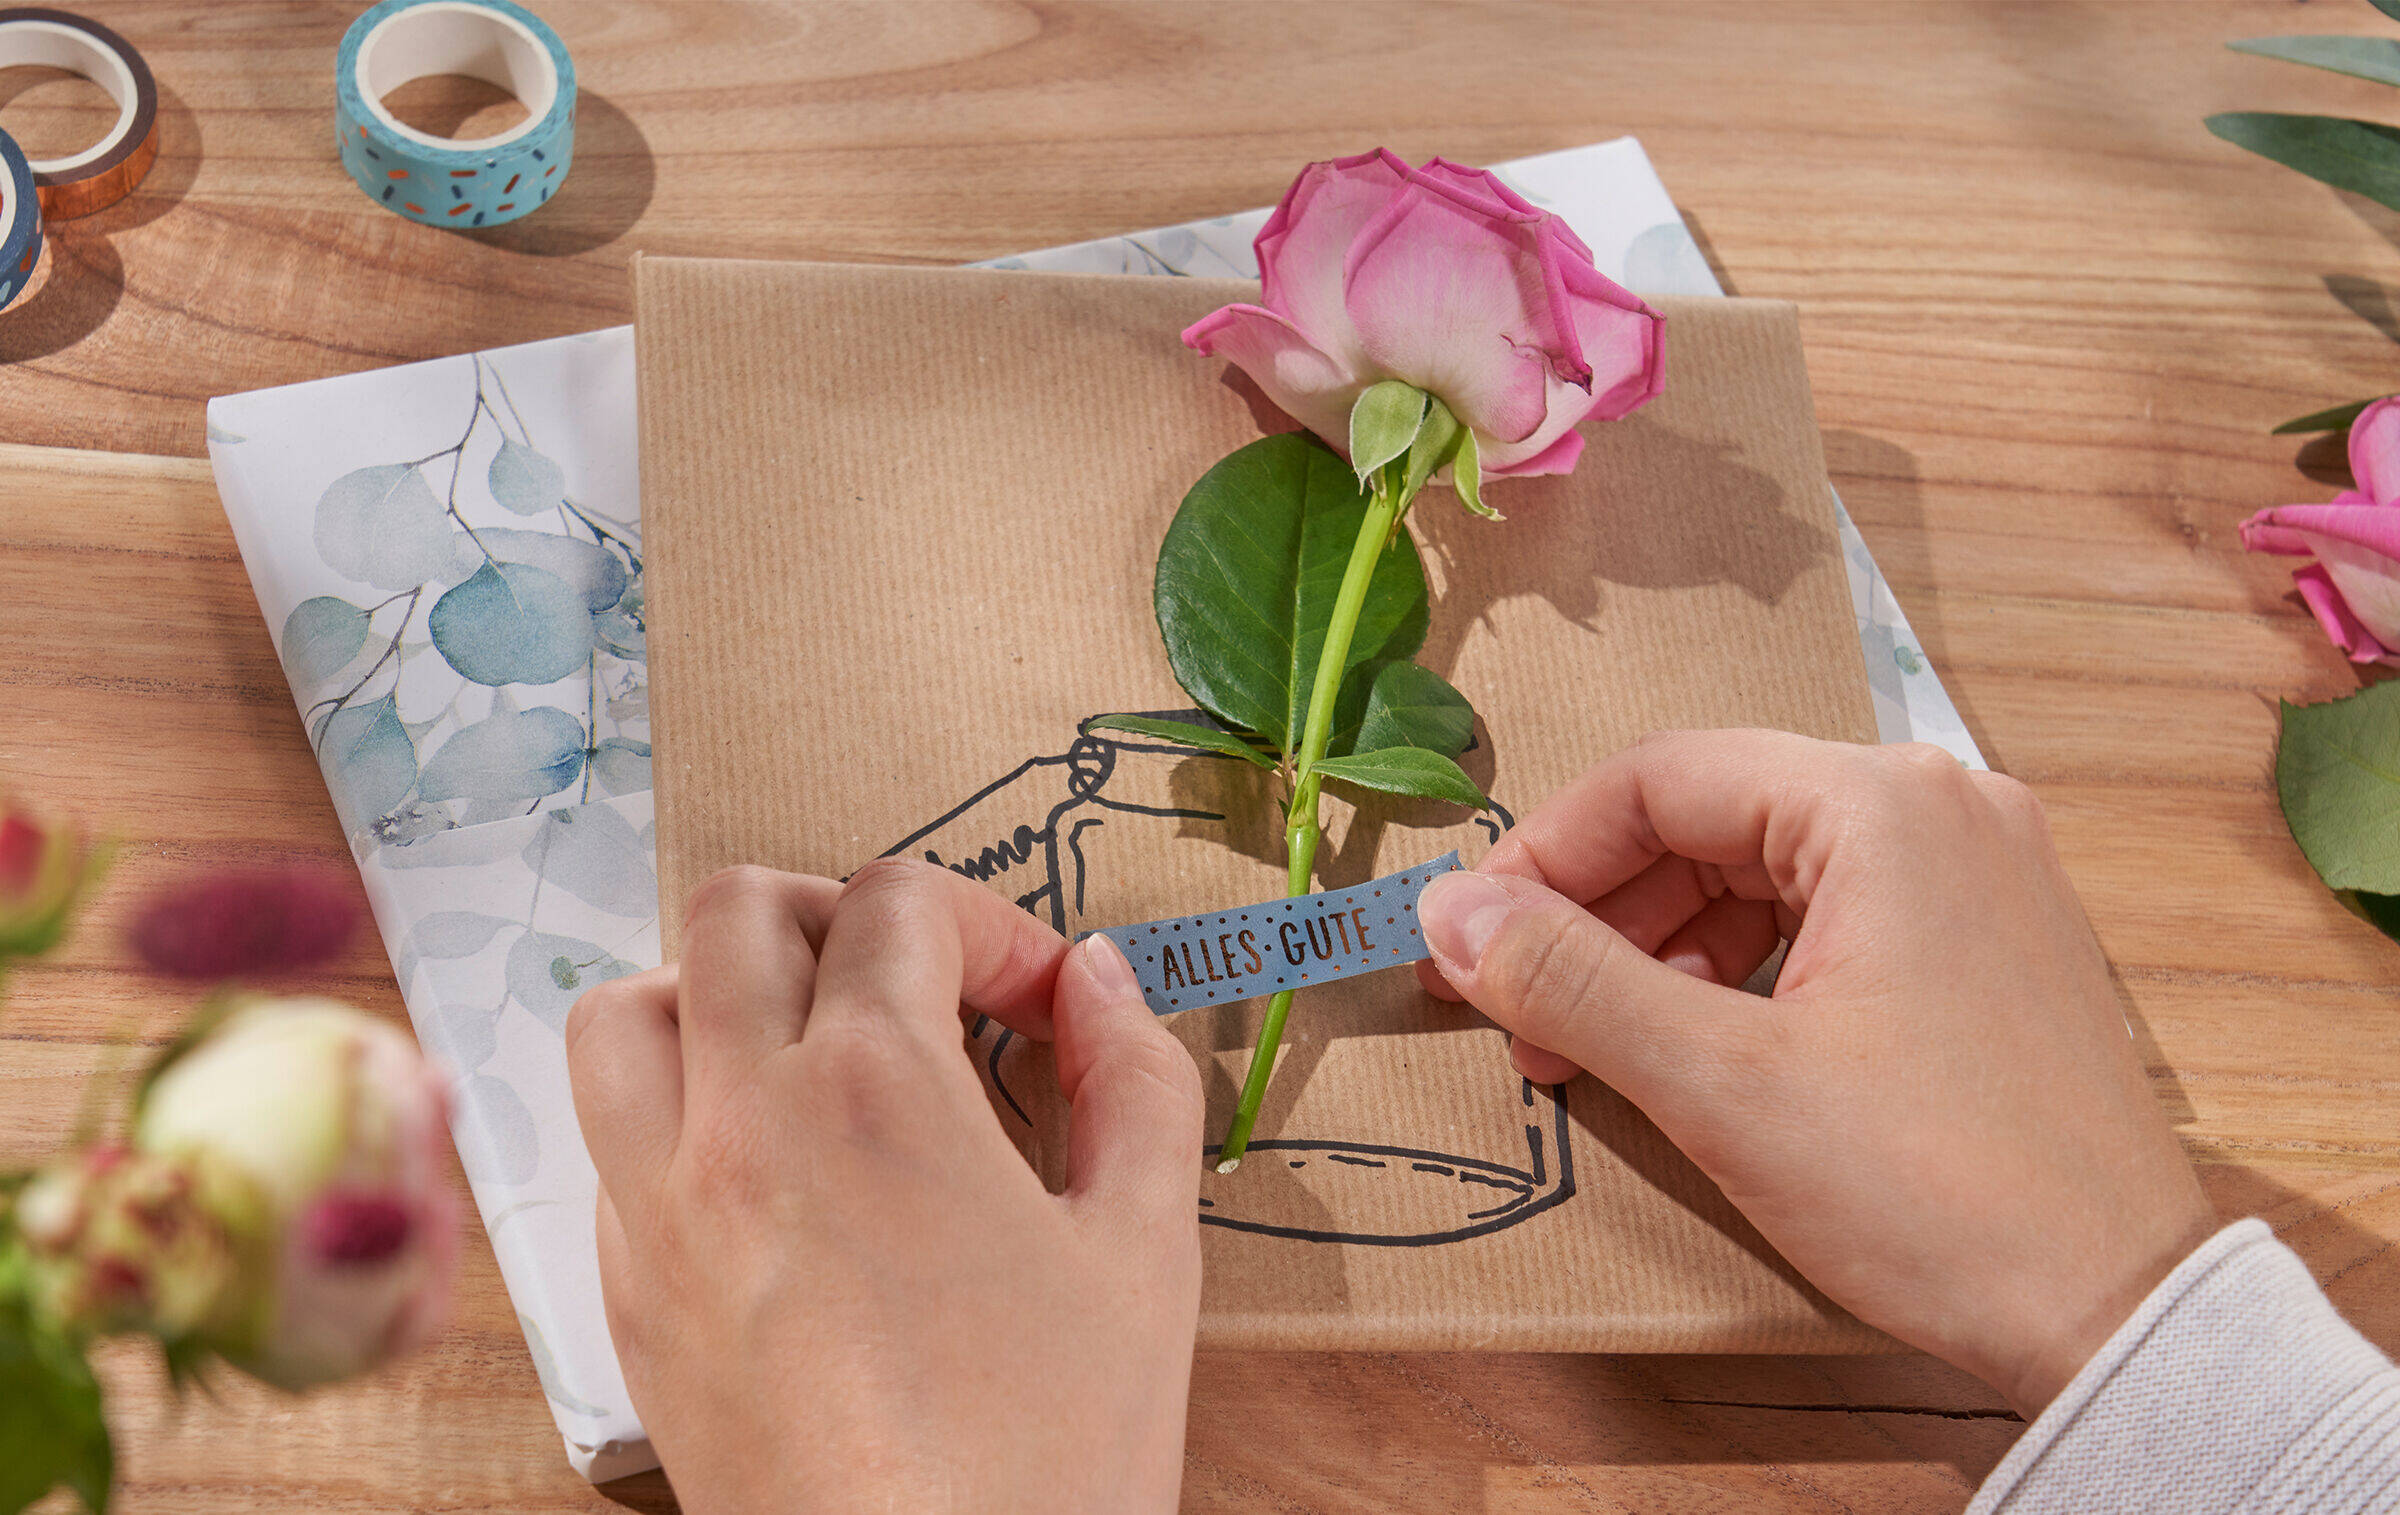 Zwei Hände kleben mit einem Stück Masking-Tape, auf dem „Alles Gute“ steht, eine Rose auf ein Geschenk, auf das eine Vasenillustration gezeichnet ist. Daneben lieben drei Rollen Masking-Tape und weitere Blumen.